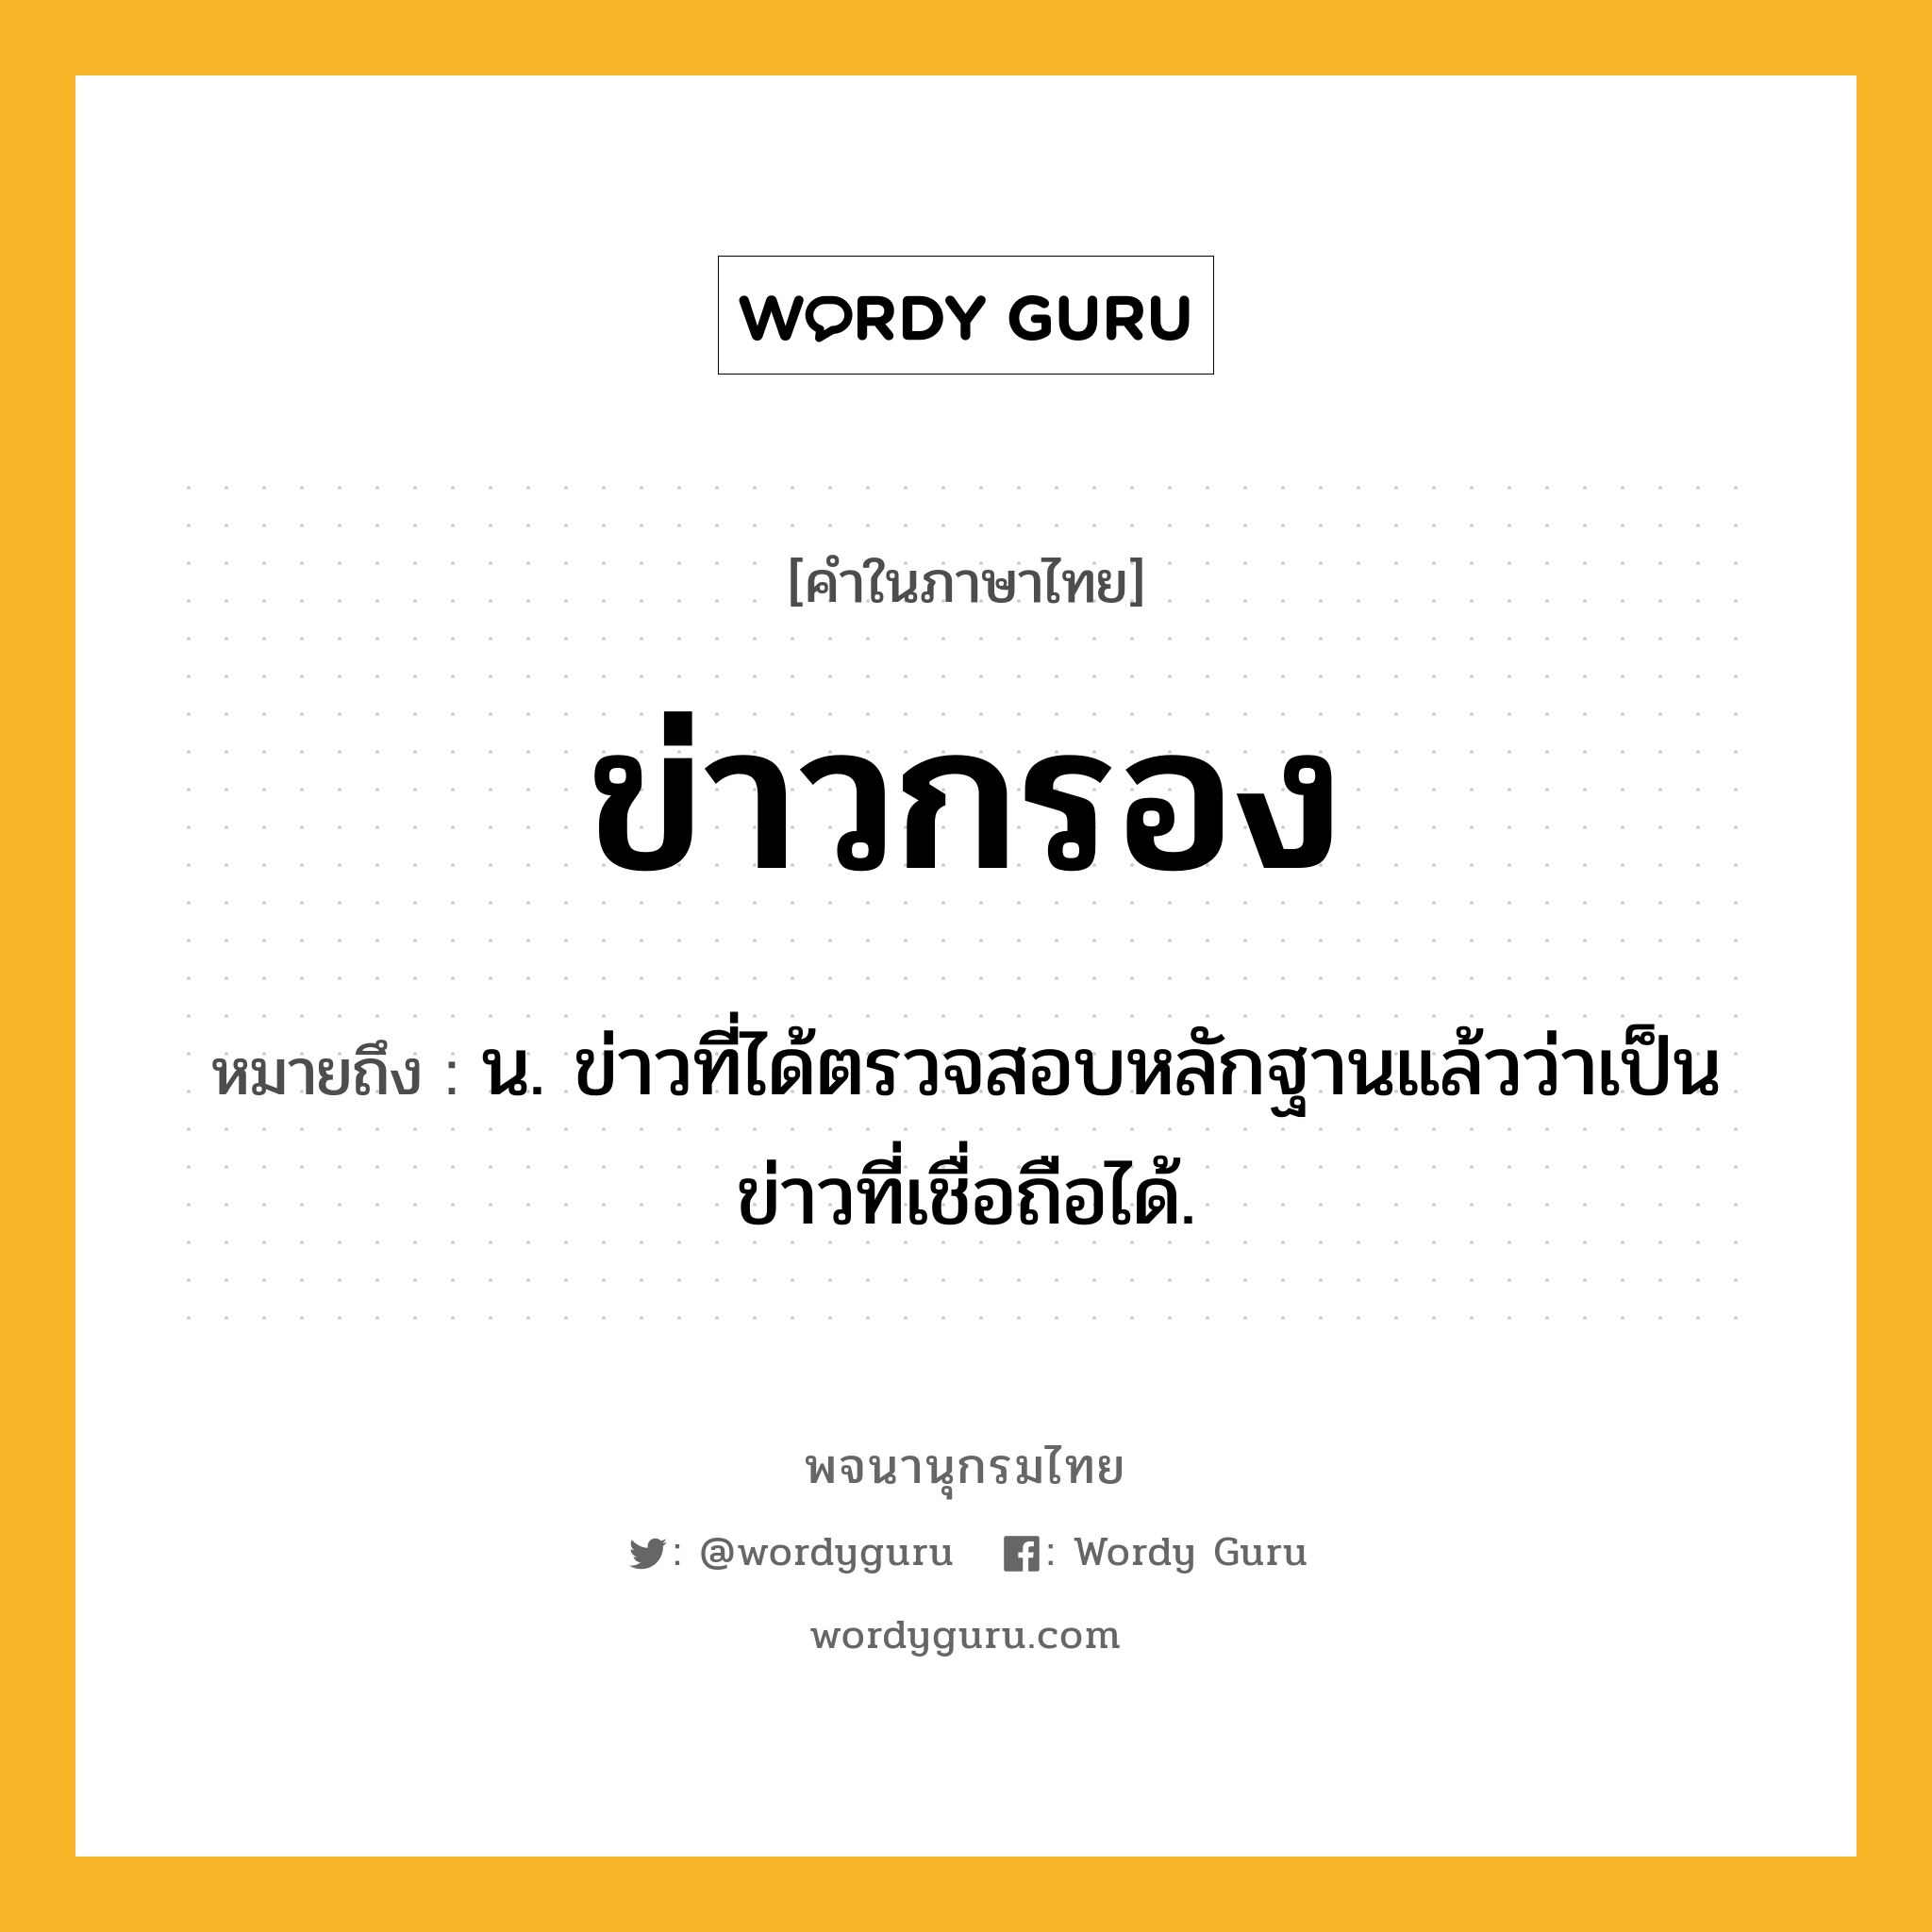 ข่าวกรอง ความหมาย หมายถึงอะไร?, คำในภาษาไทย ข่าวกรอง หมายถึง น. ข่าวที่ได้ตรวจสอบหลักฐานแล้วว่าเป็นข่าวที่เชื่อถือได้.